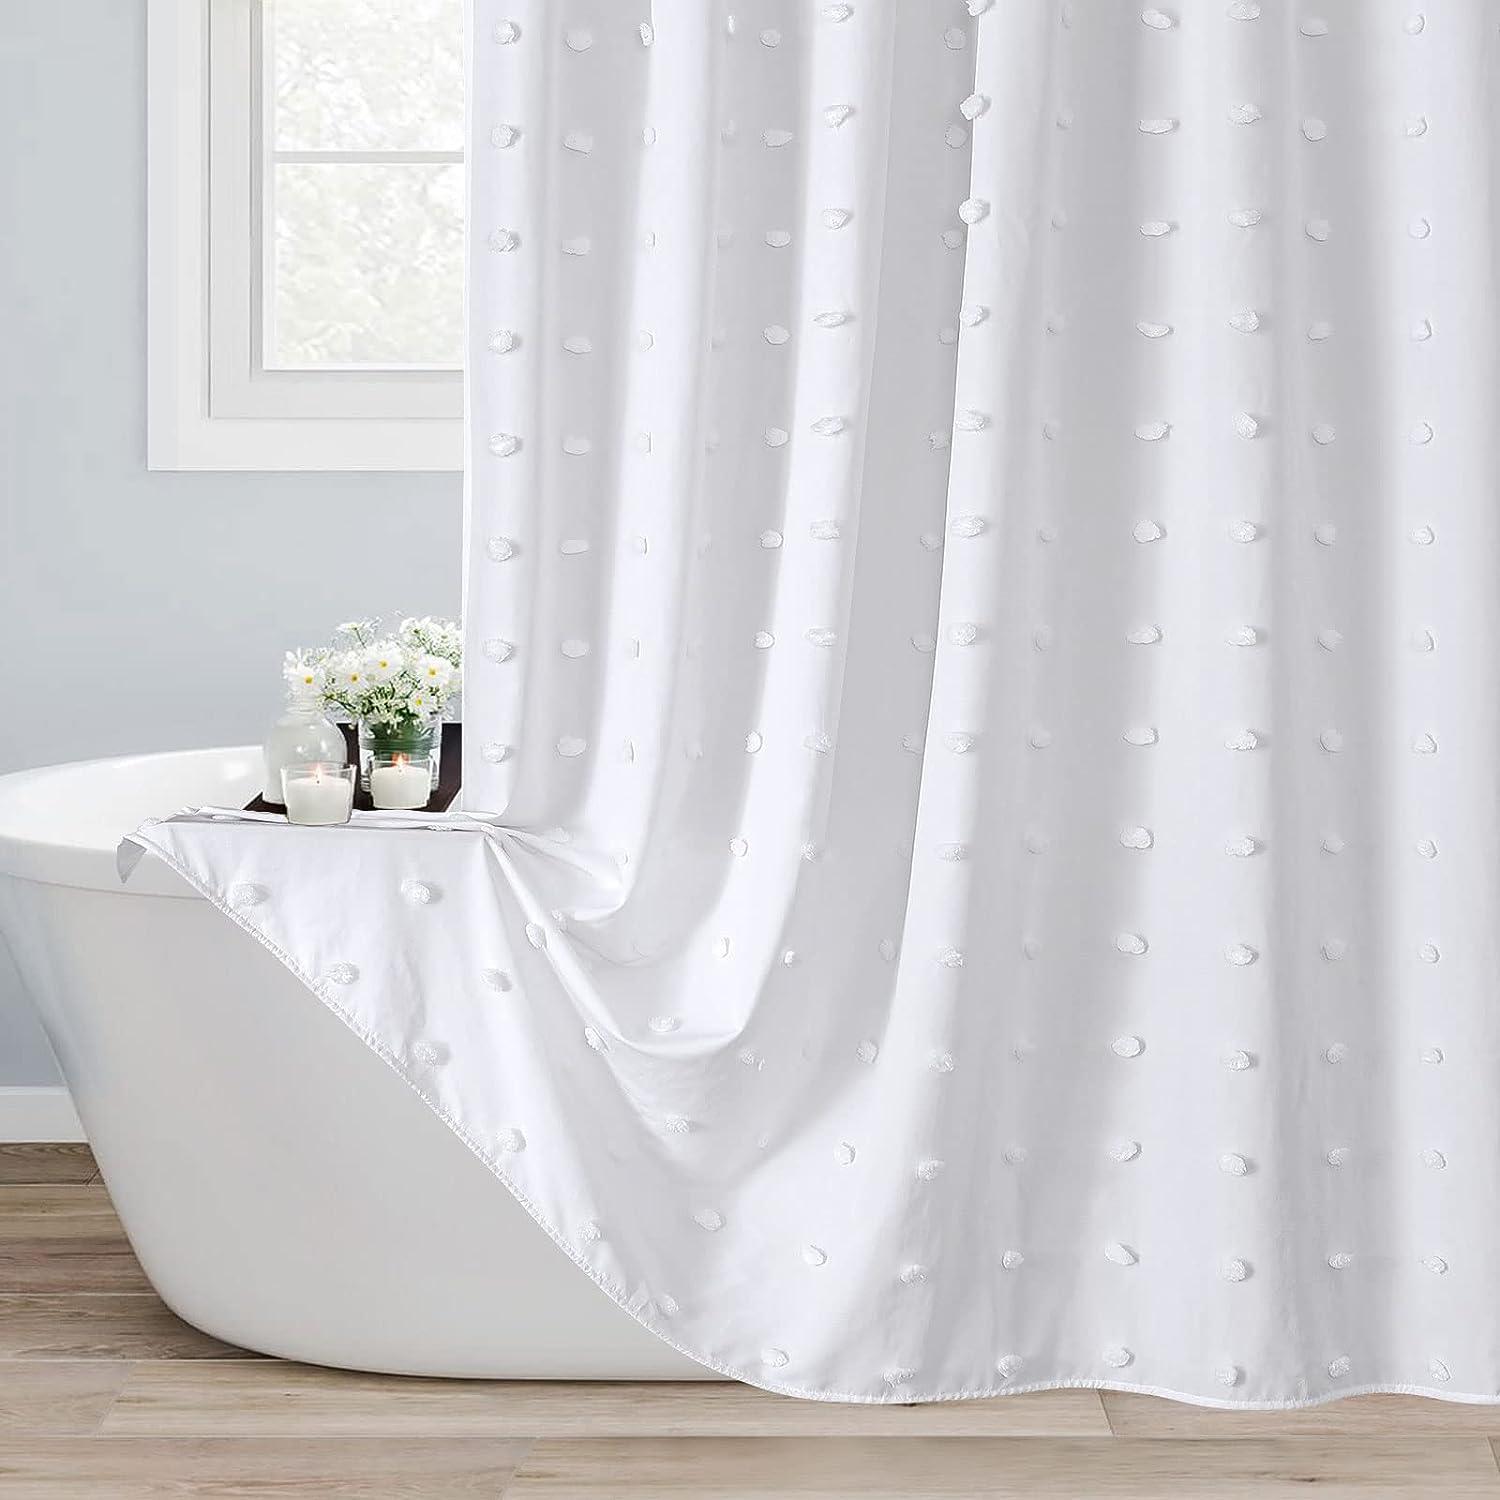 Juego de cortinas de ducha de tela bohemia blanca cortinas de